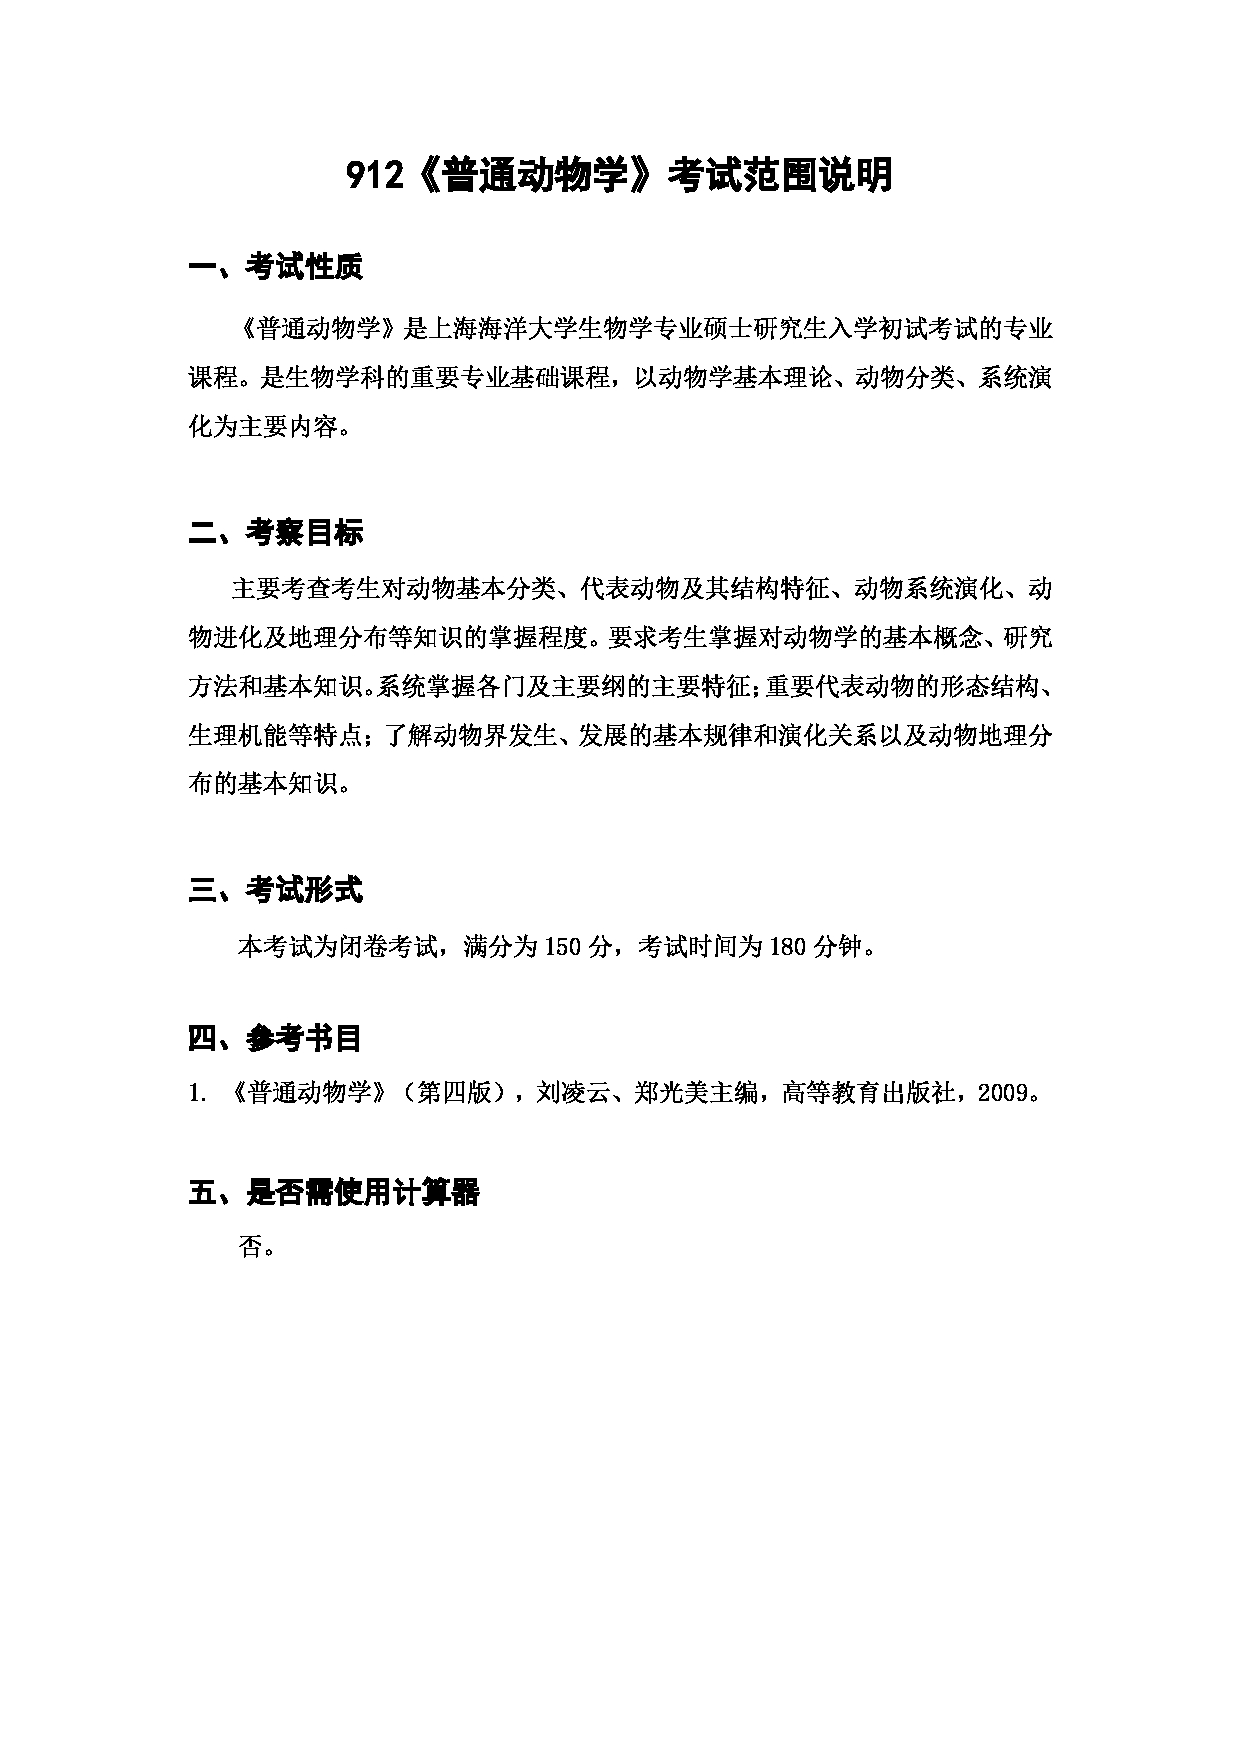 上海海洋大学2023年考研自命题科目 912《普通动物学》 考试范围第1页